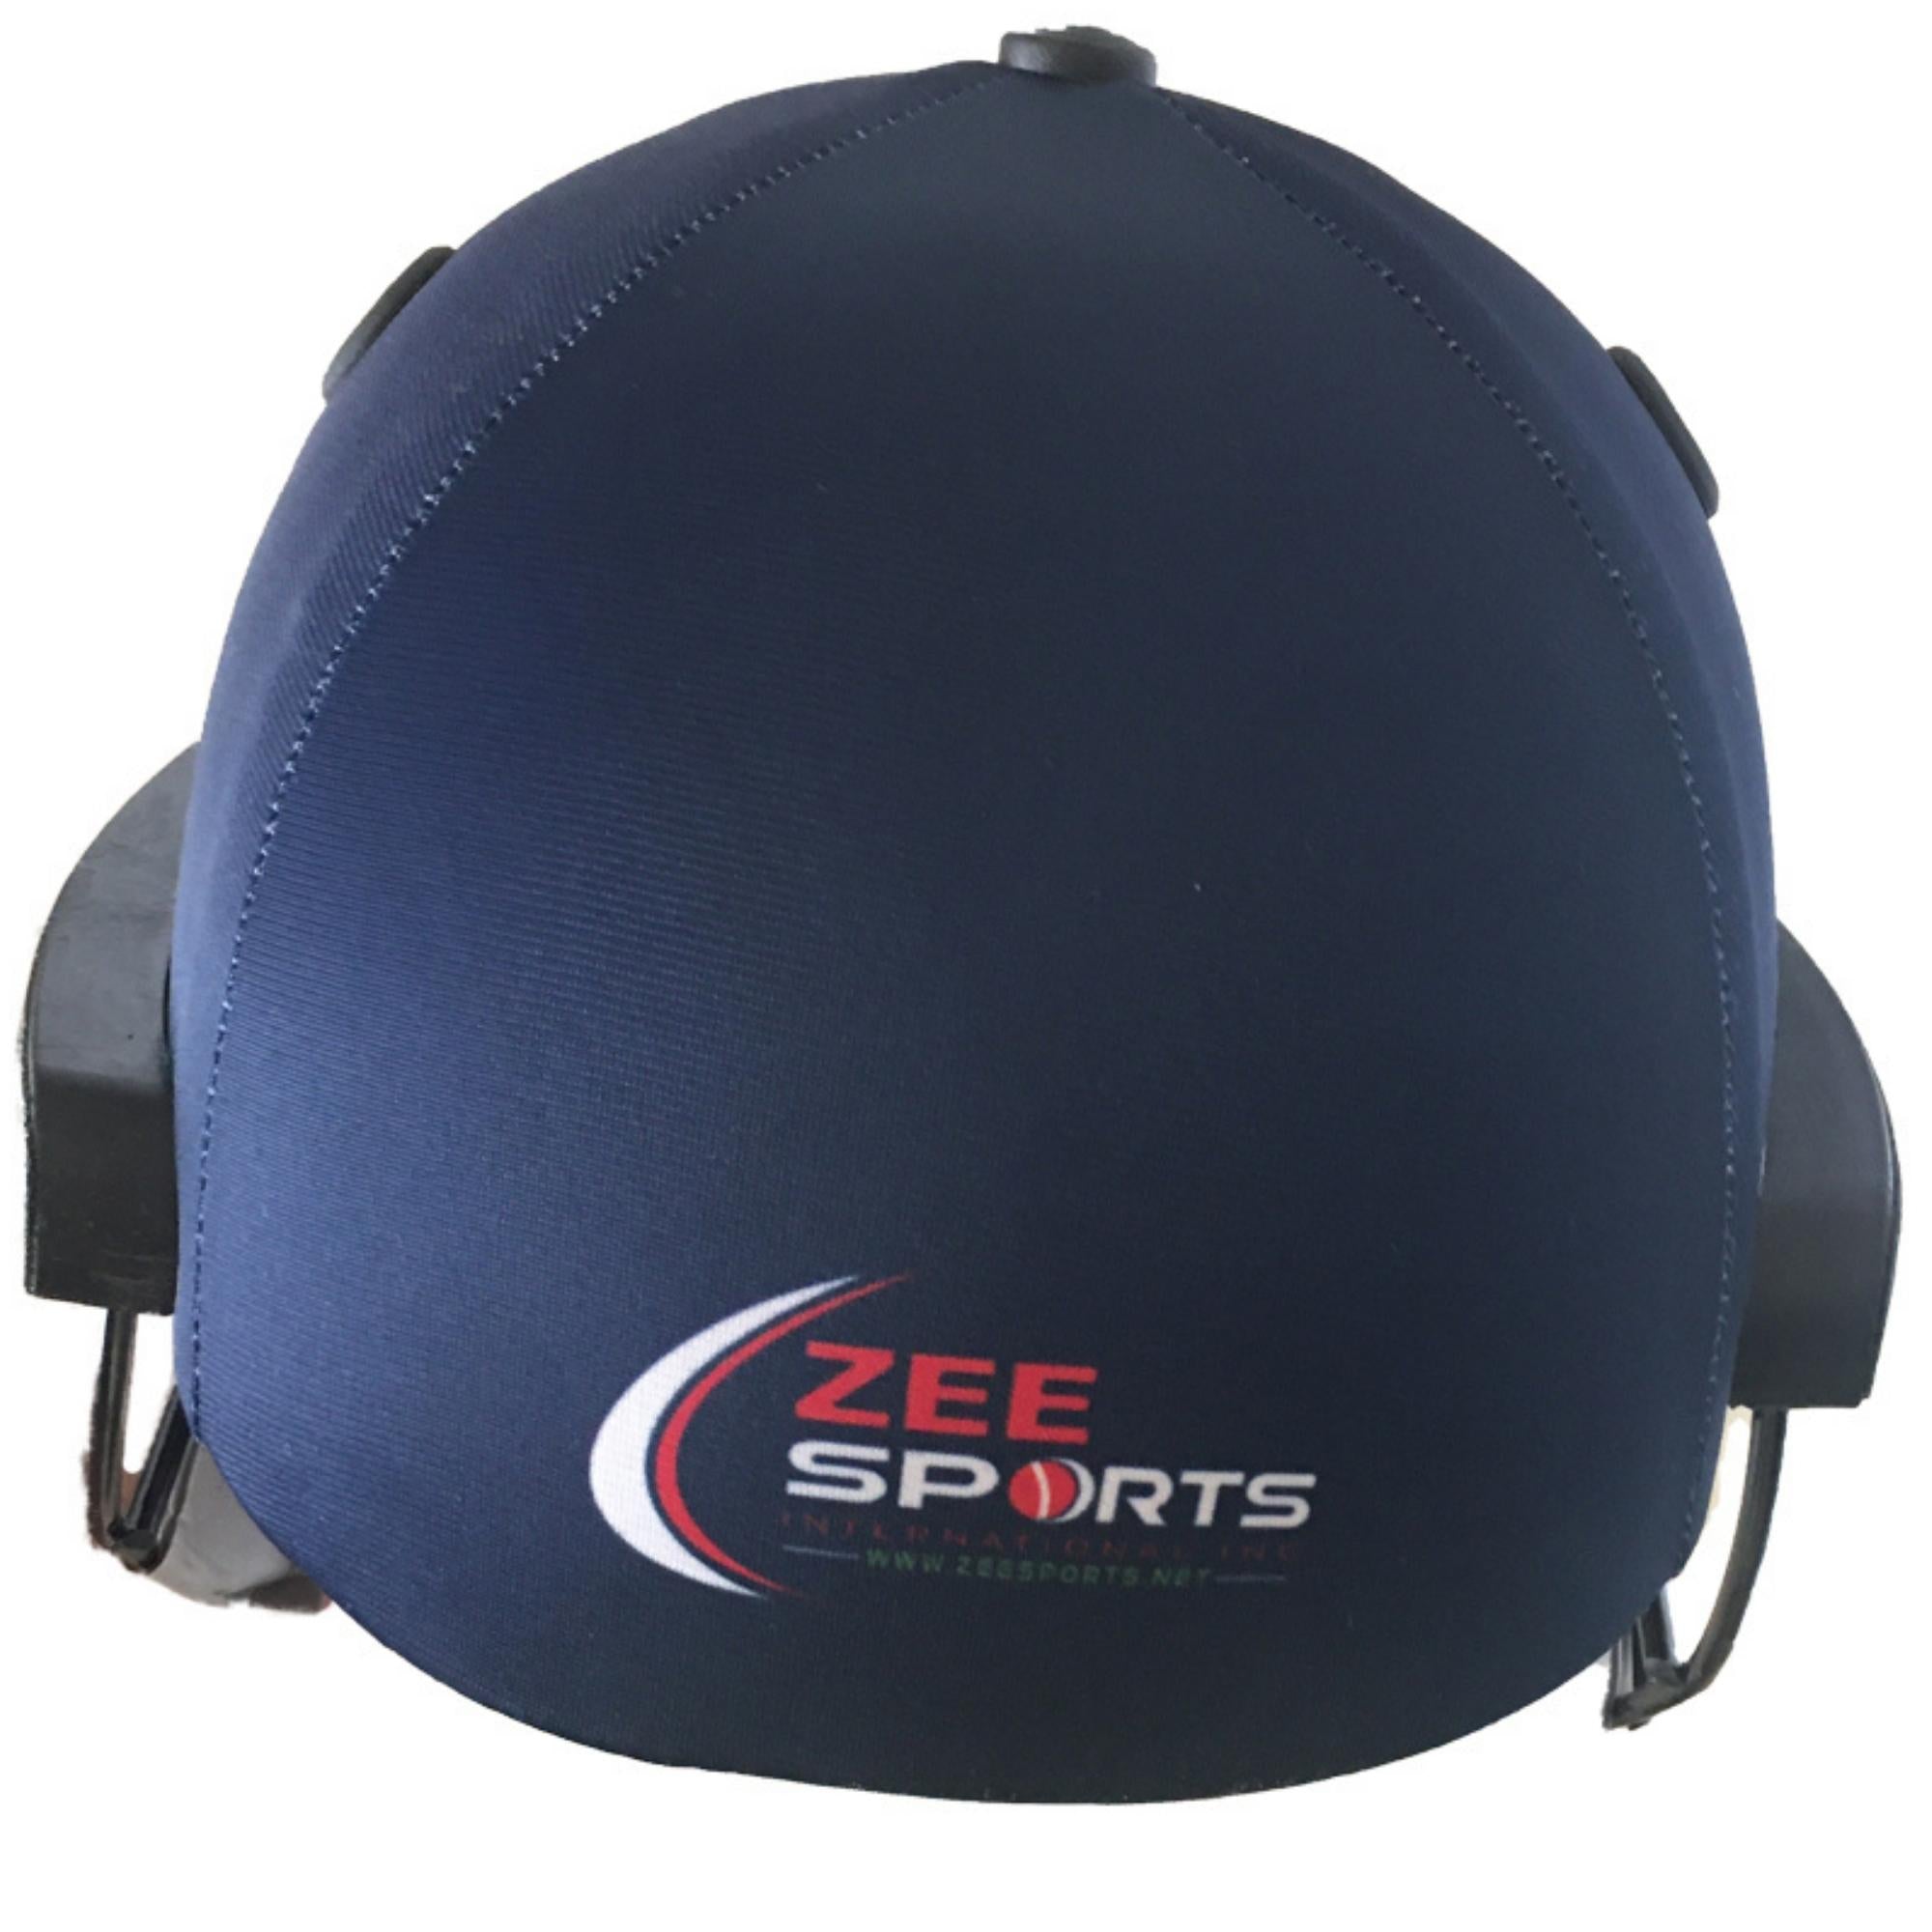 Zee Sports Blue Helmet